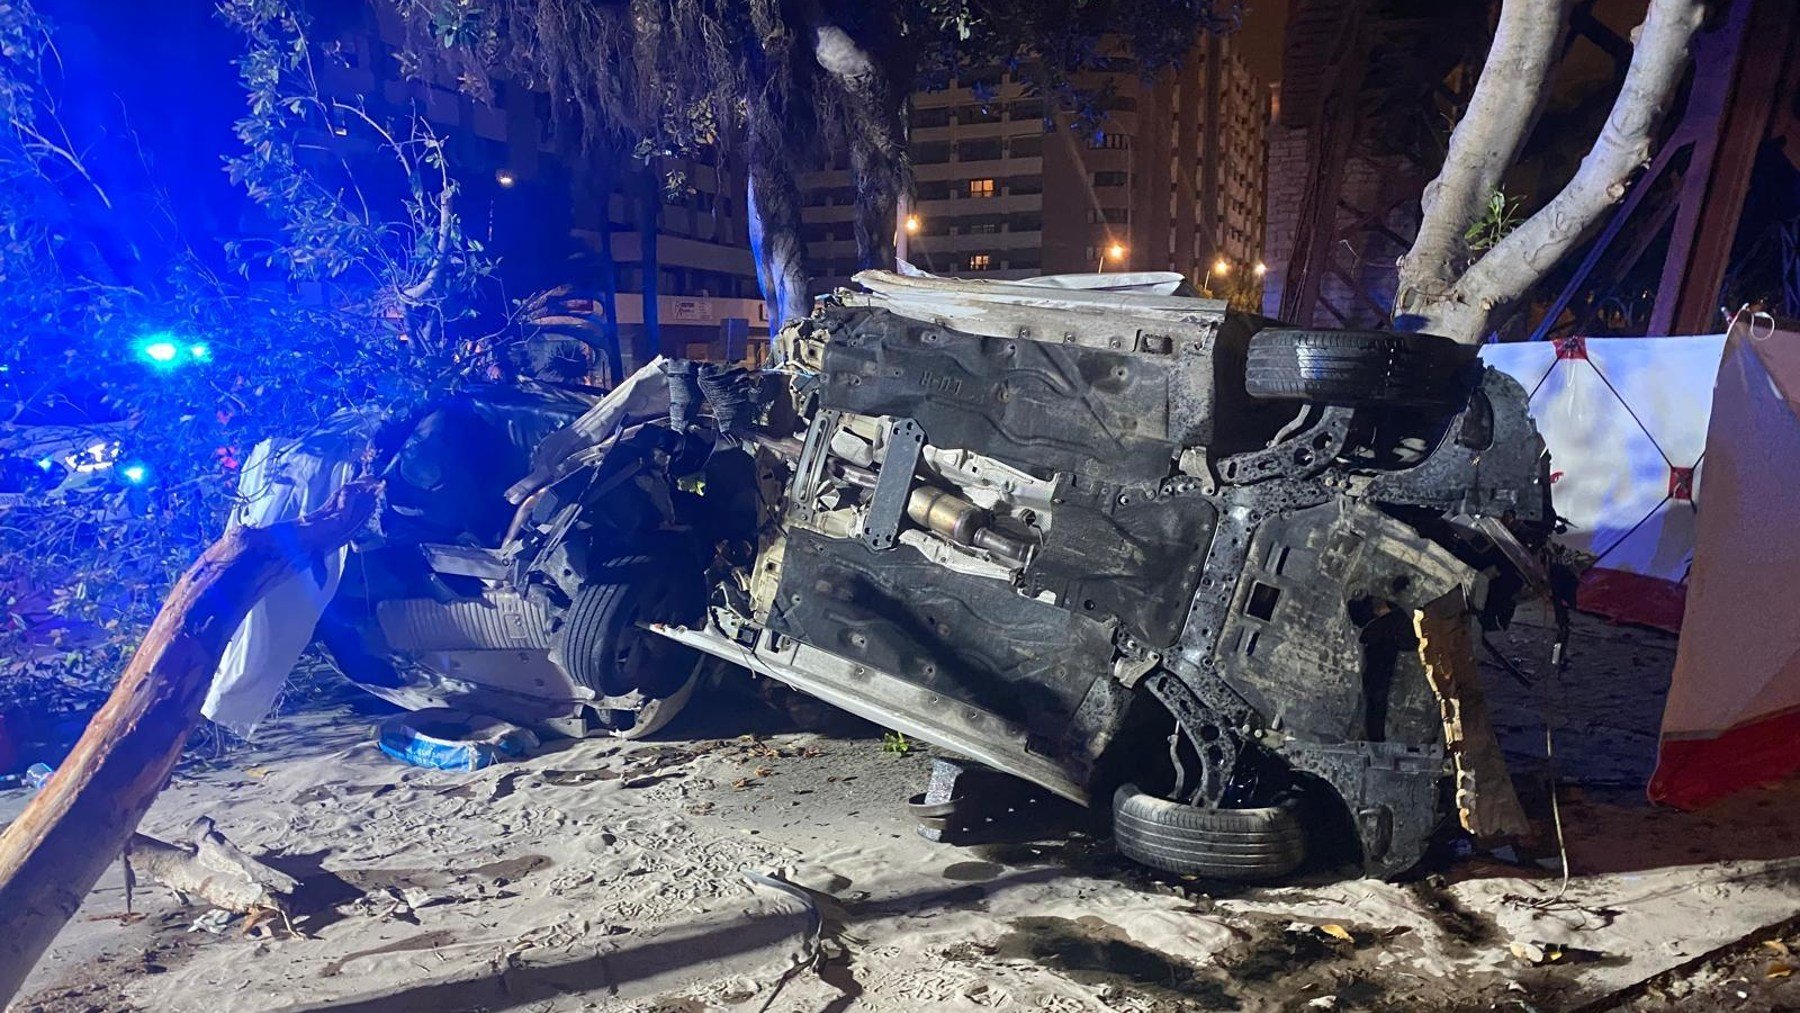 Vehículo volcado en la vía tras el accidente de tráfico en Almería.